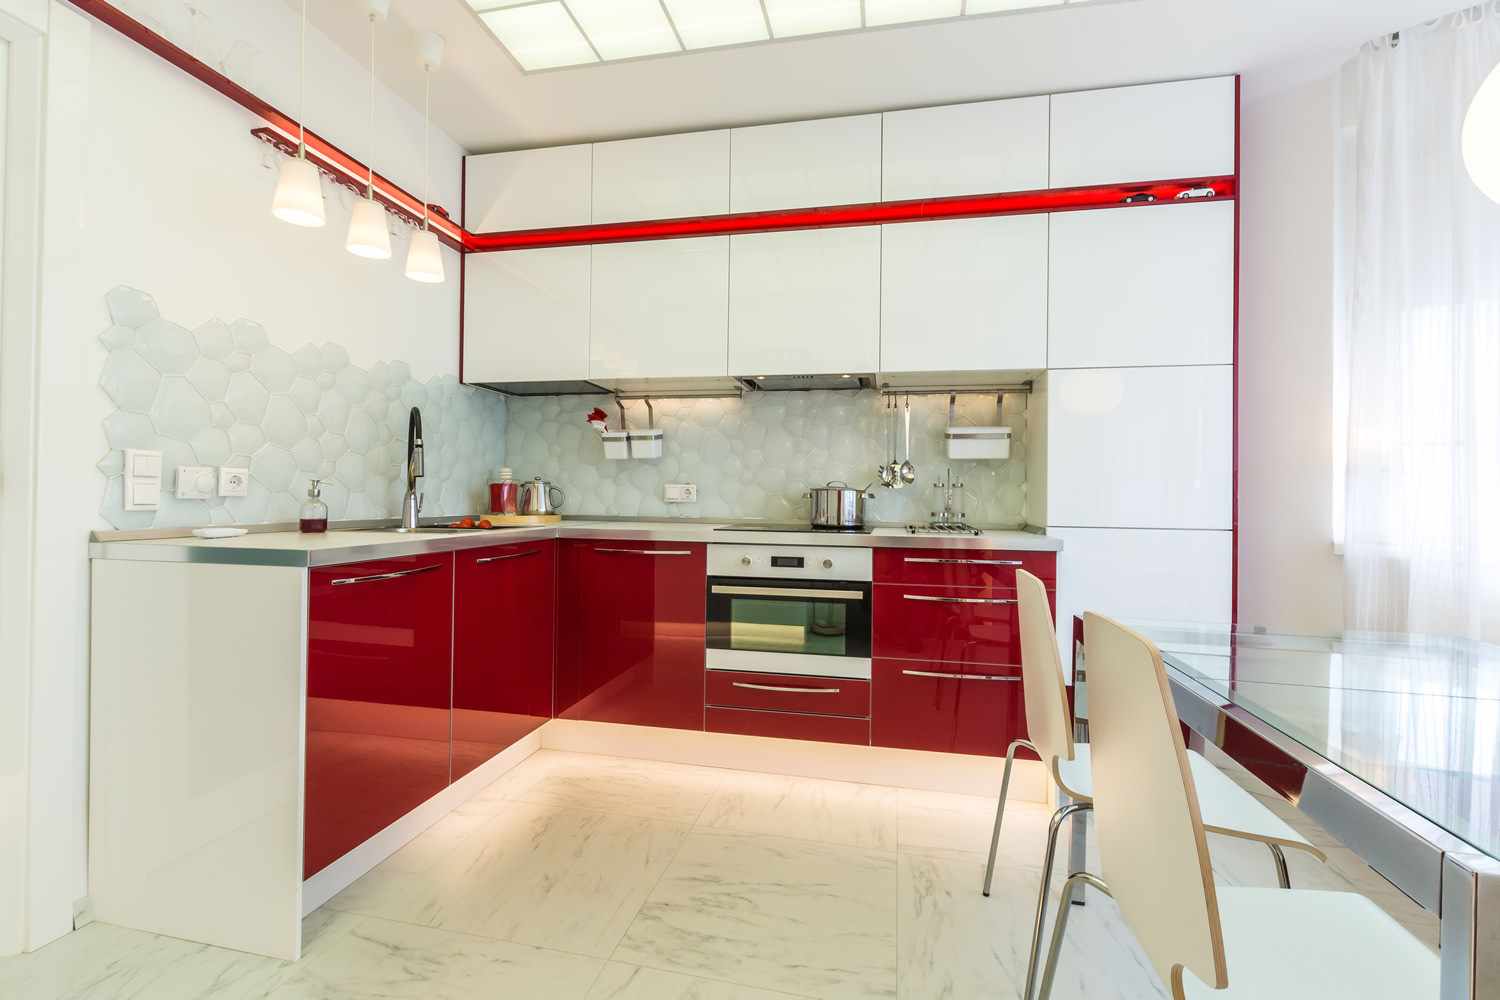 مثال على الديكور الجميل للمطبخ الأحمر